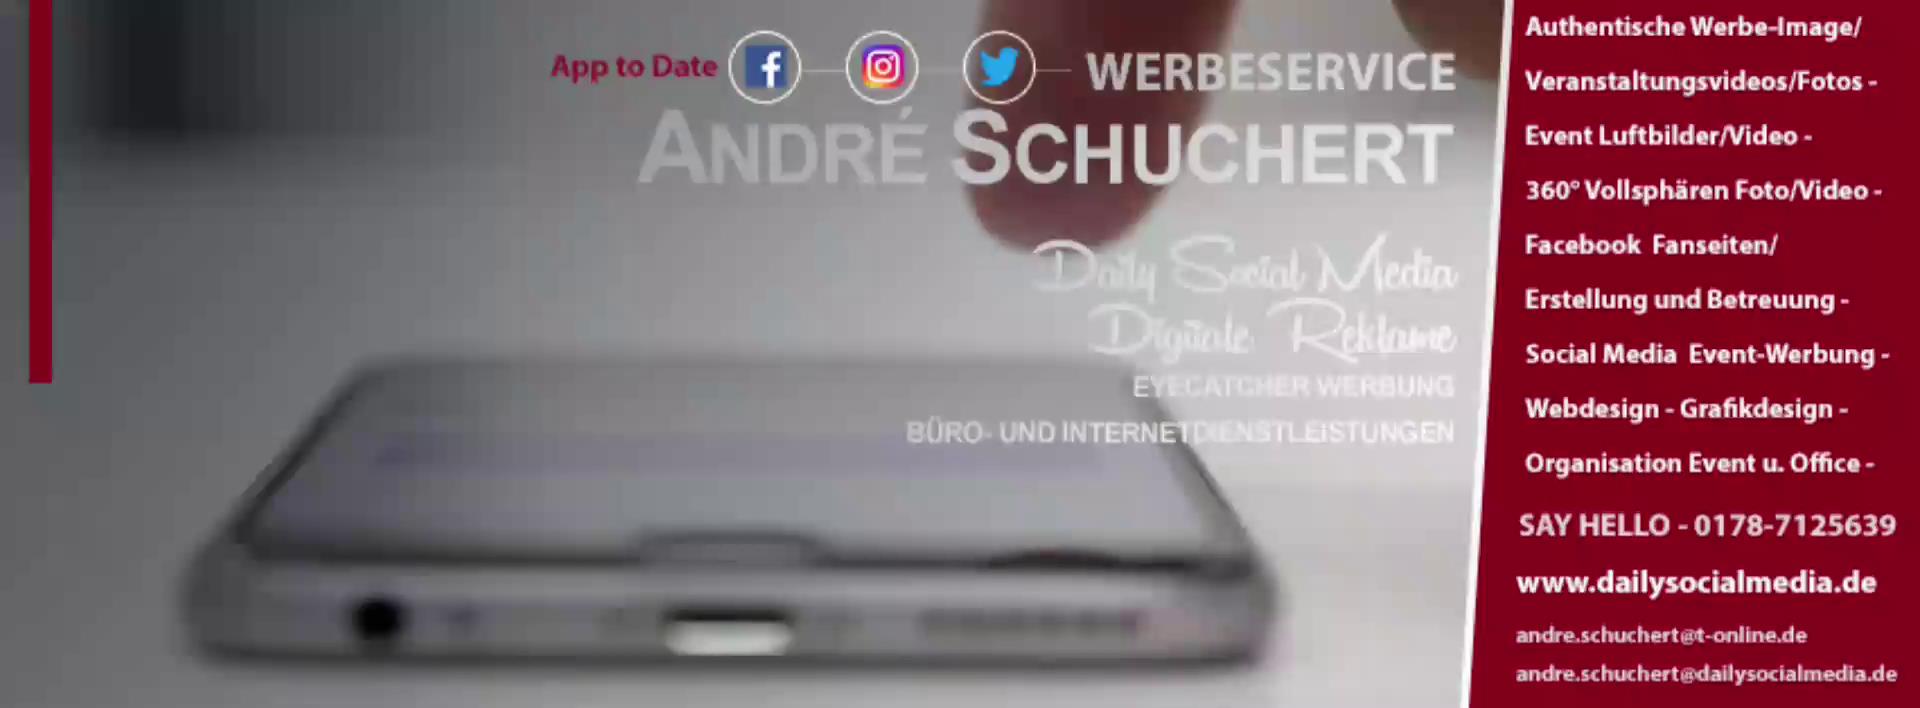 Anmelden | Werbeservice André Schuchert - Daily Social Media